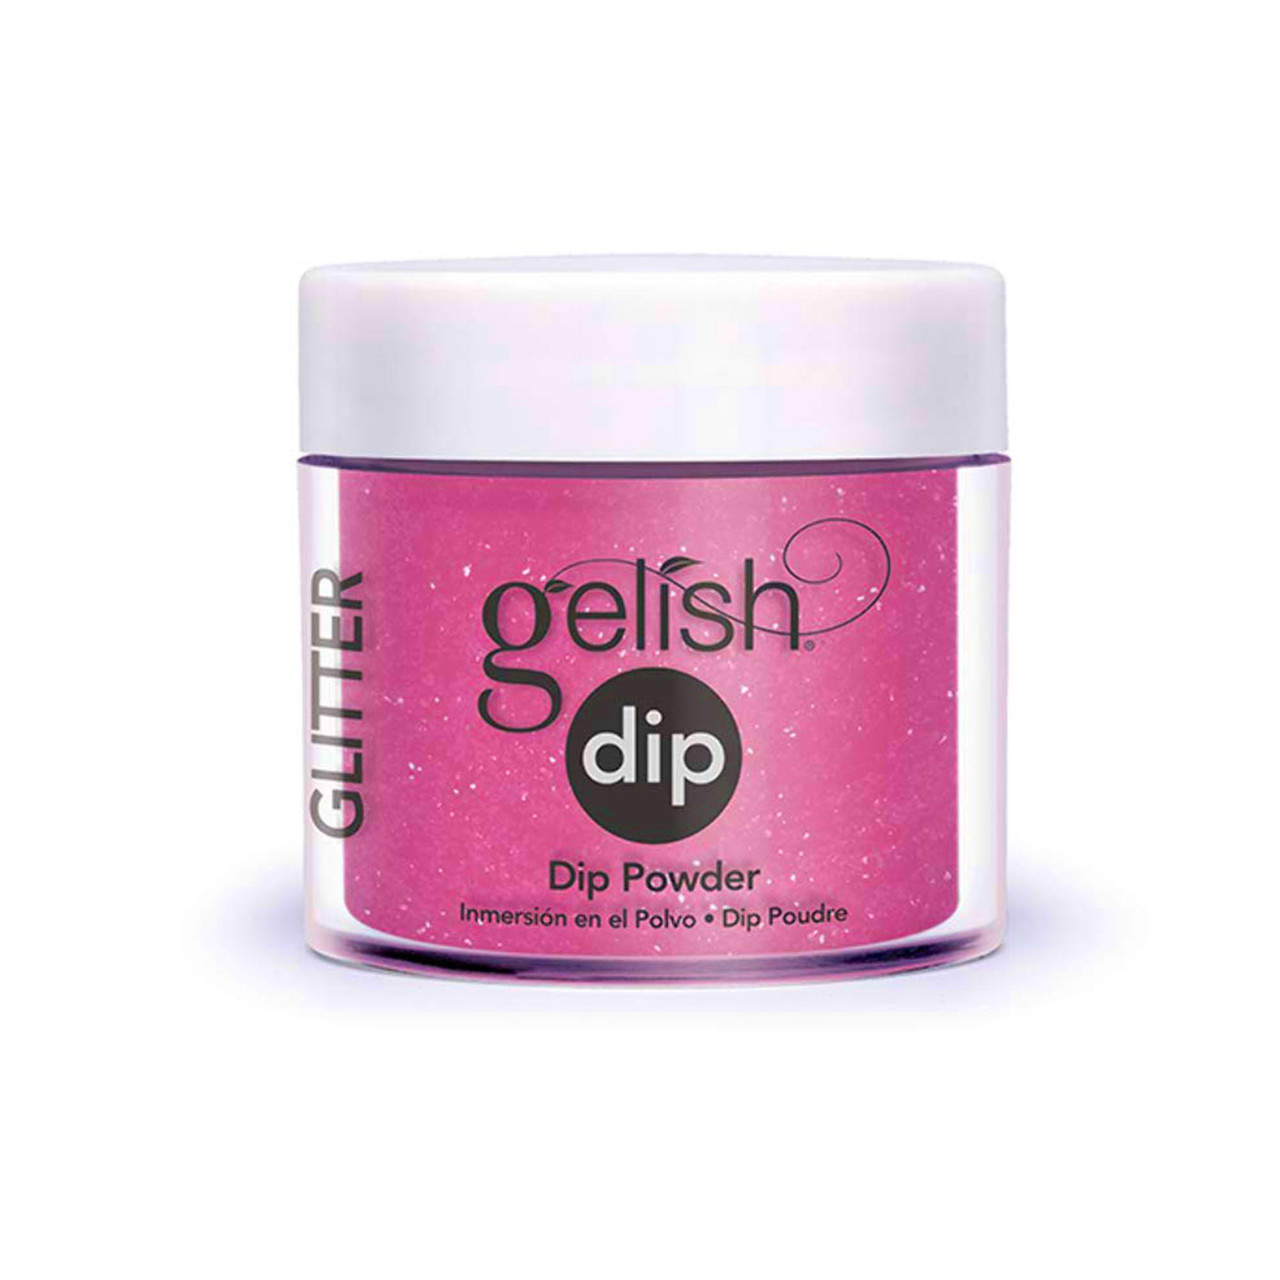 Gelish Dip Powder - 1610820 - High Bridge